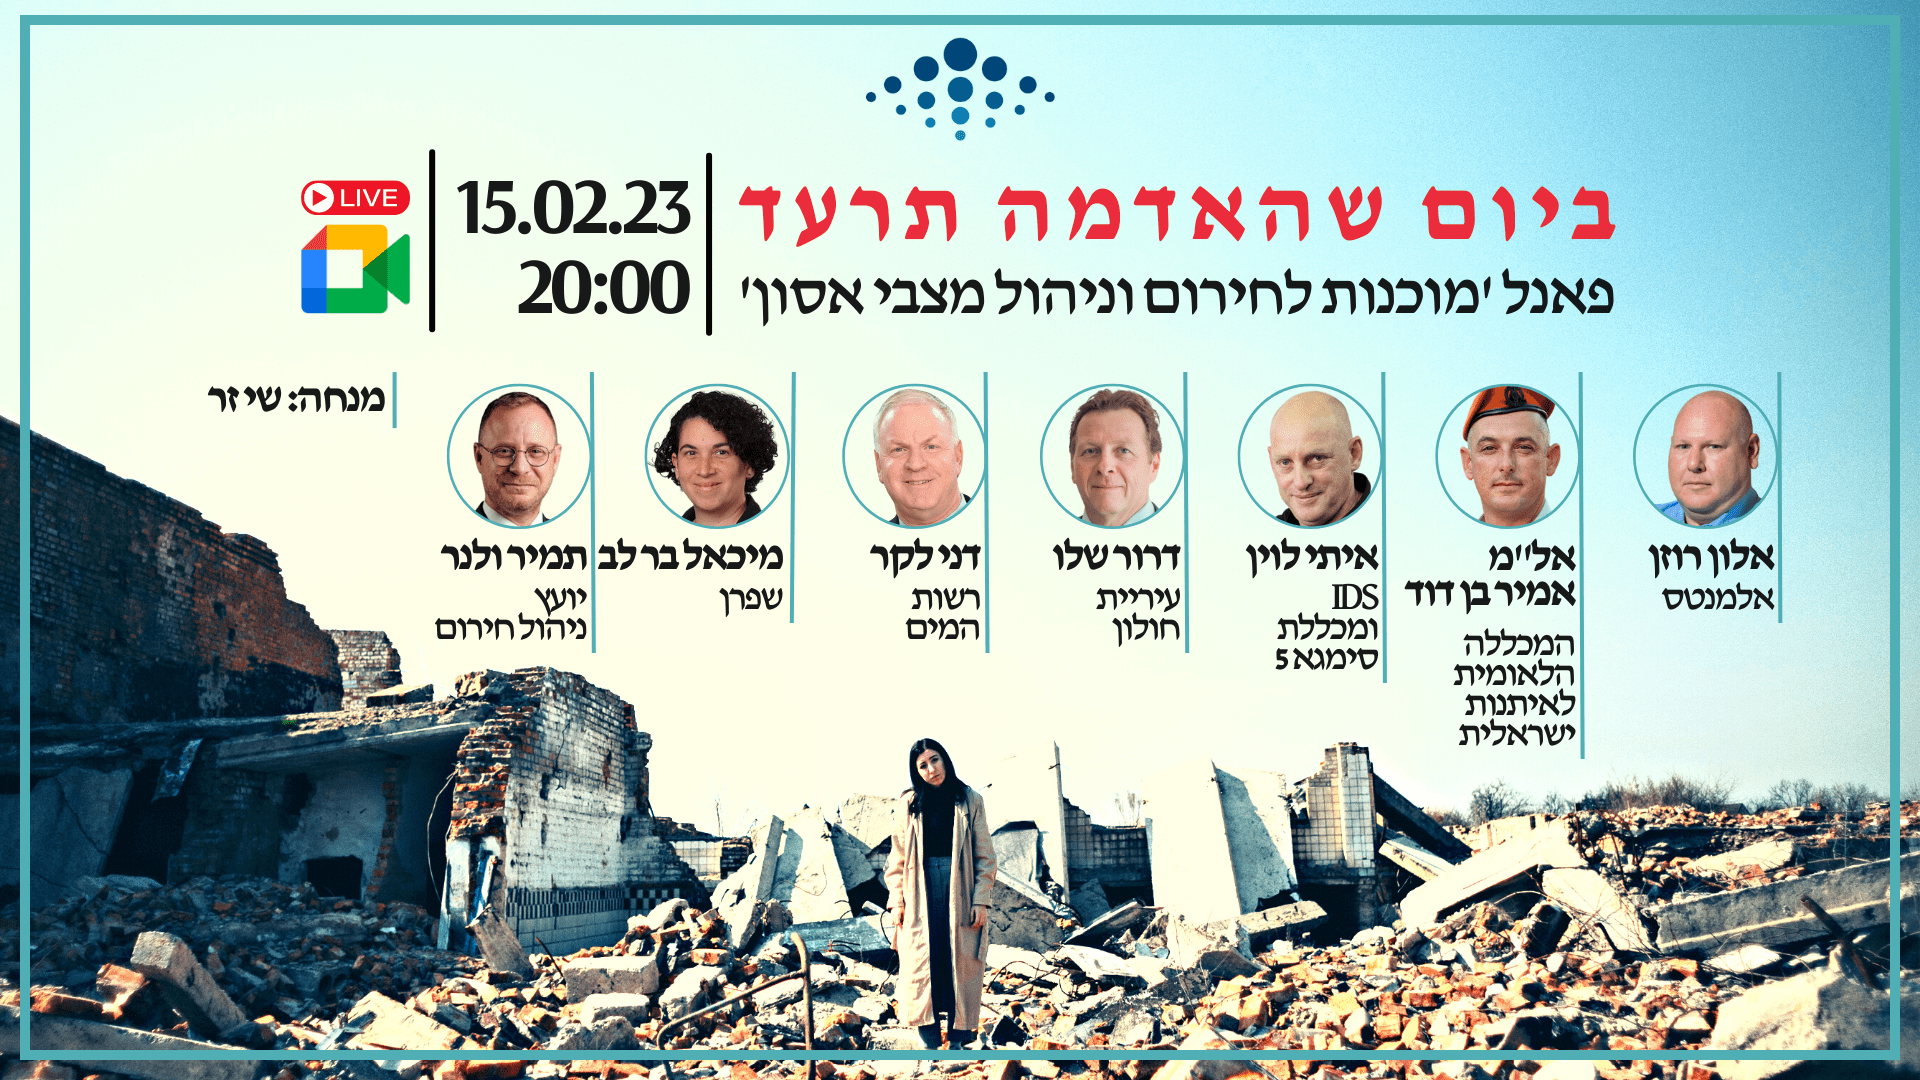 ביום שהאדמה תרעד - פאנל: מוכנות לחירום וניהול מצבי אסון | הגילדה - הבית של מנהלי הביטחון בישראל